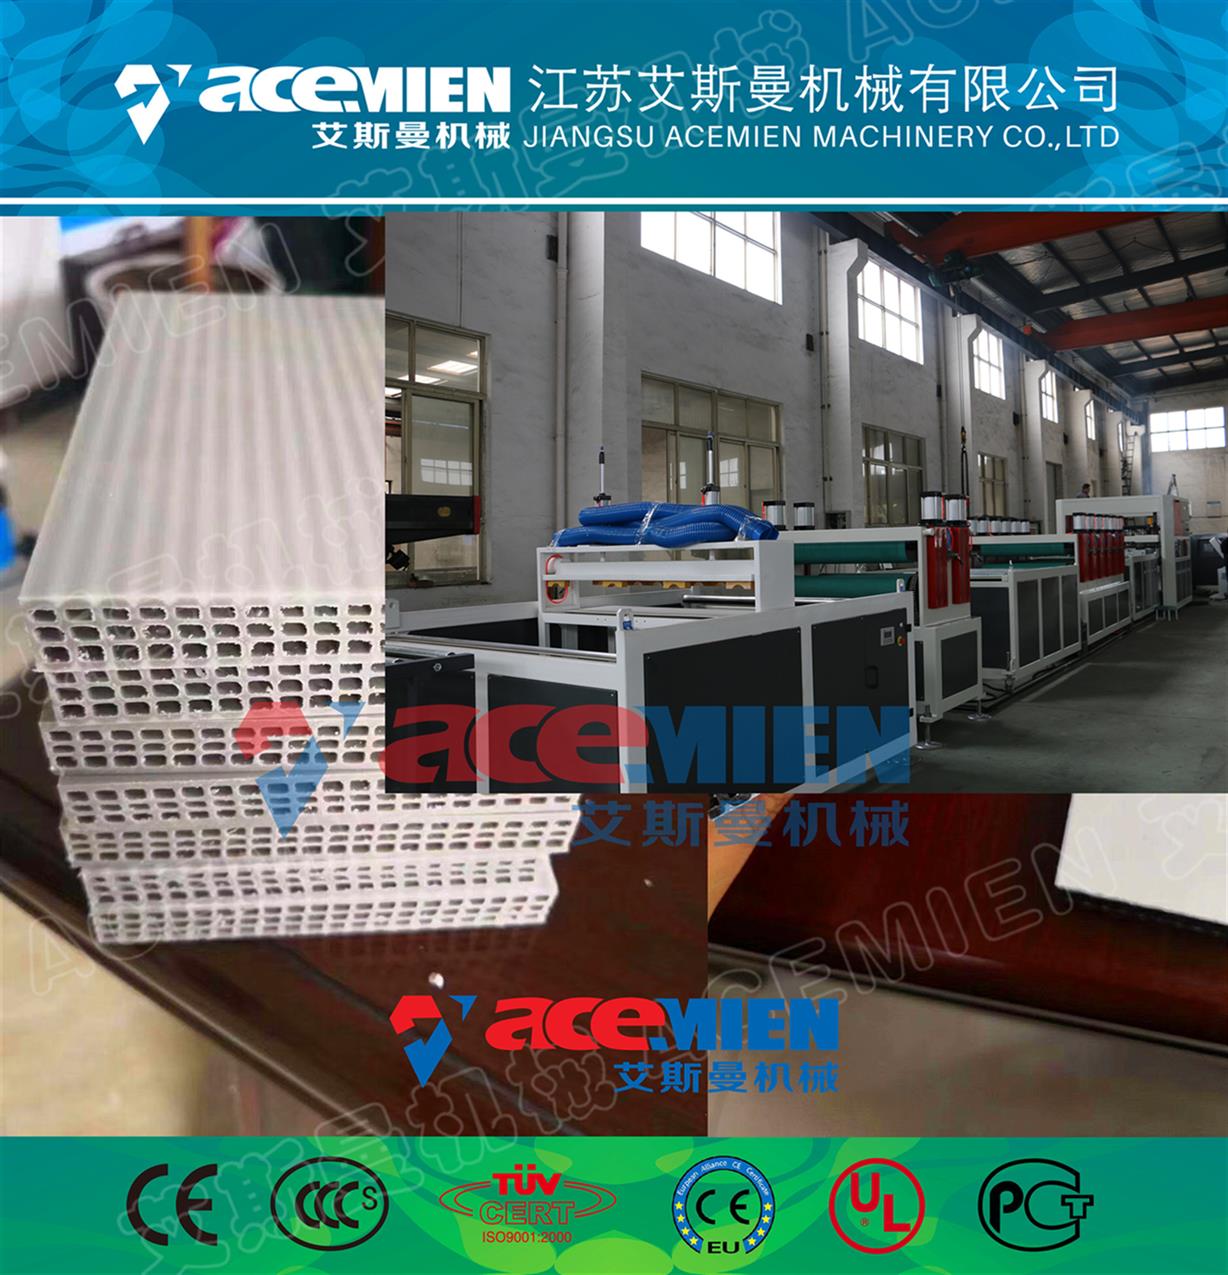 广州pp中空格子包装箱设备厂家 中空格子包装板设备 环保低碳